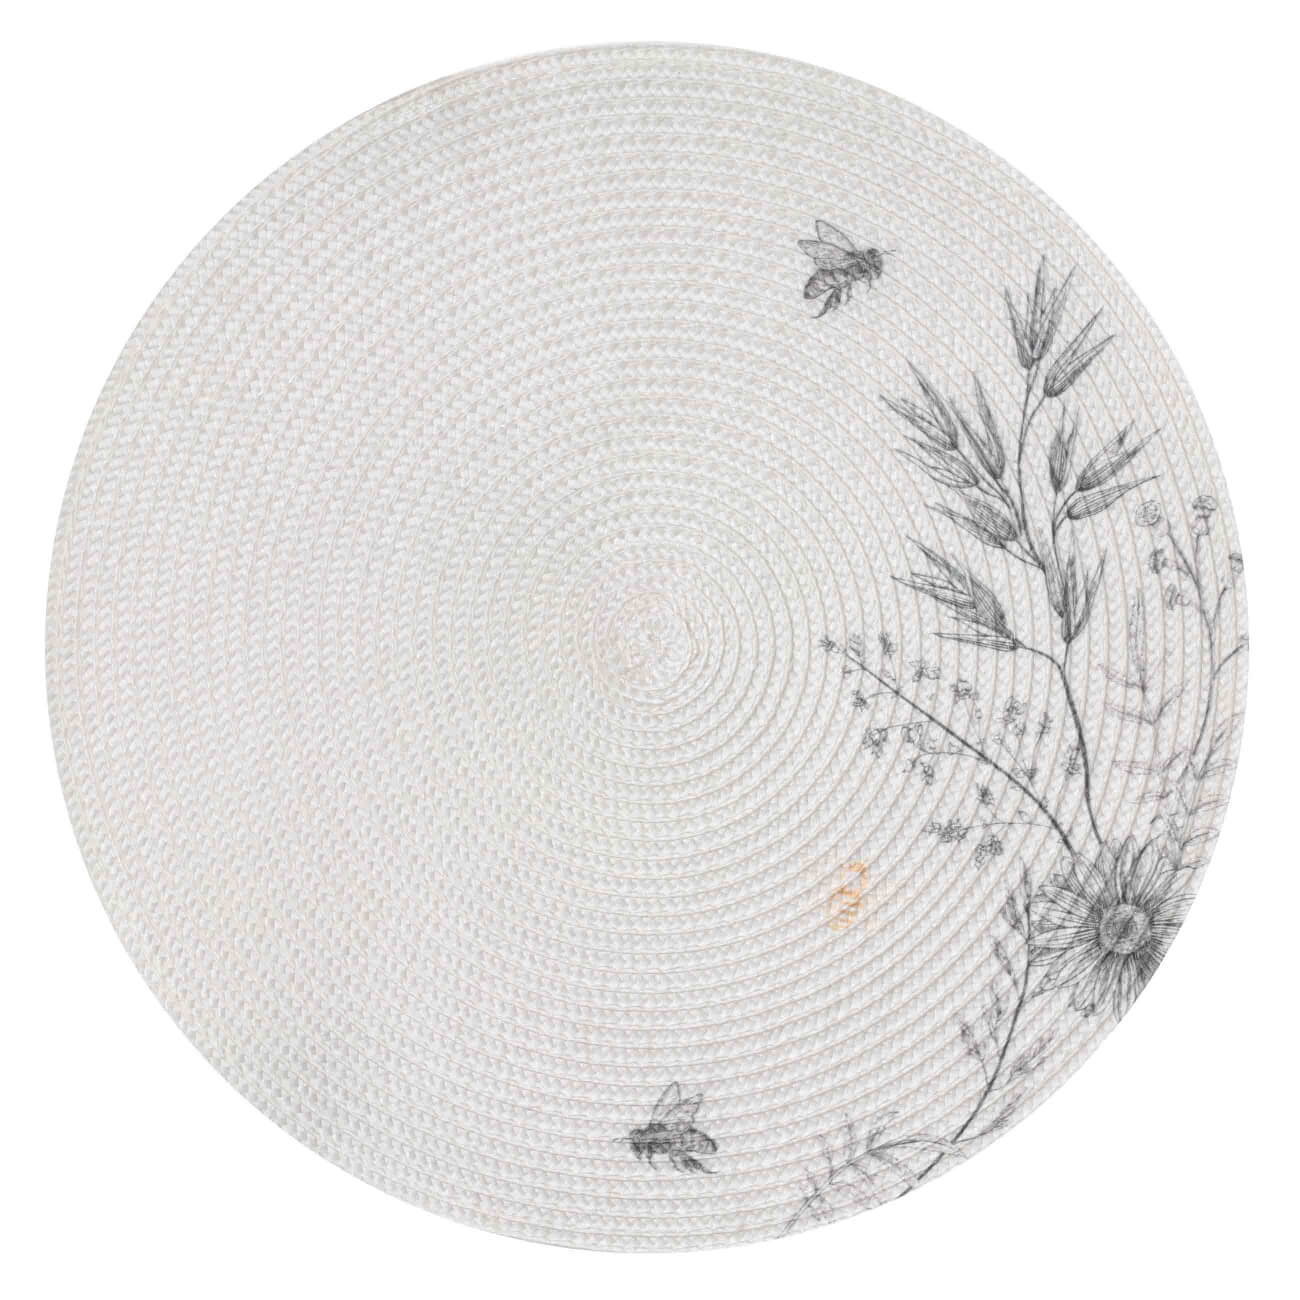 Салфетка под приборы, 38 см, полипропилен/полиэстер, круглая, серо-бежевая, Цветы и пчелы, Circle print салфетка под приборы 38 см пвх круглая белая azhur grid